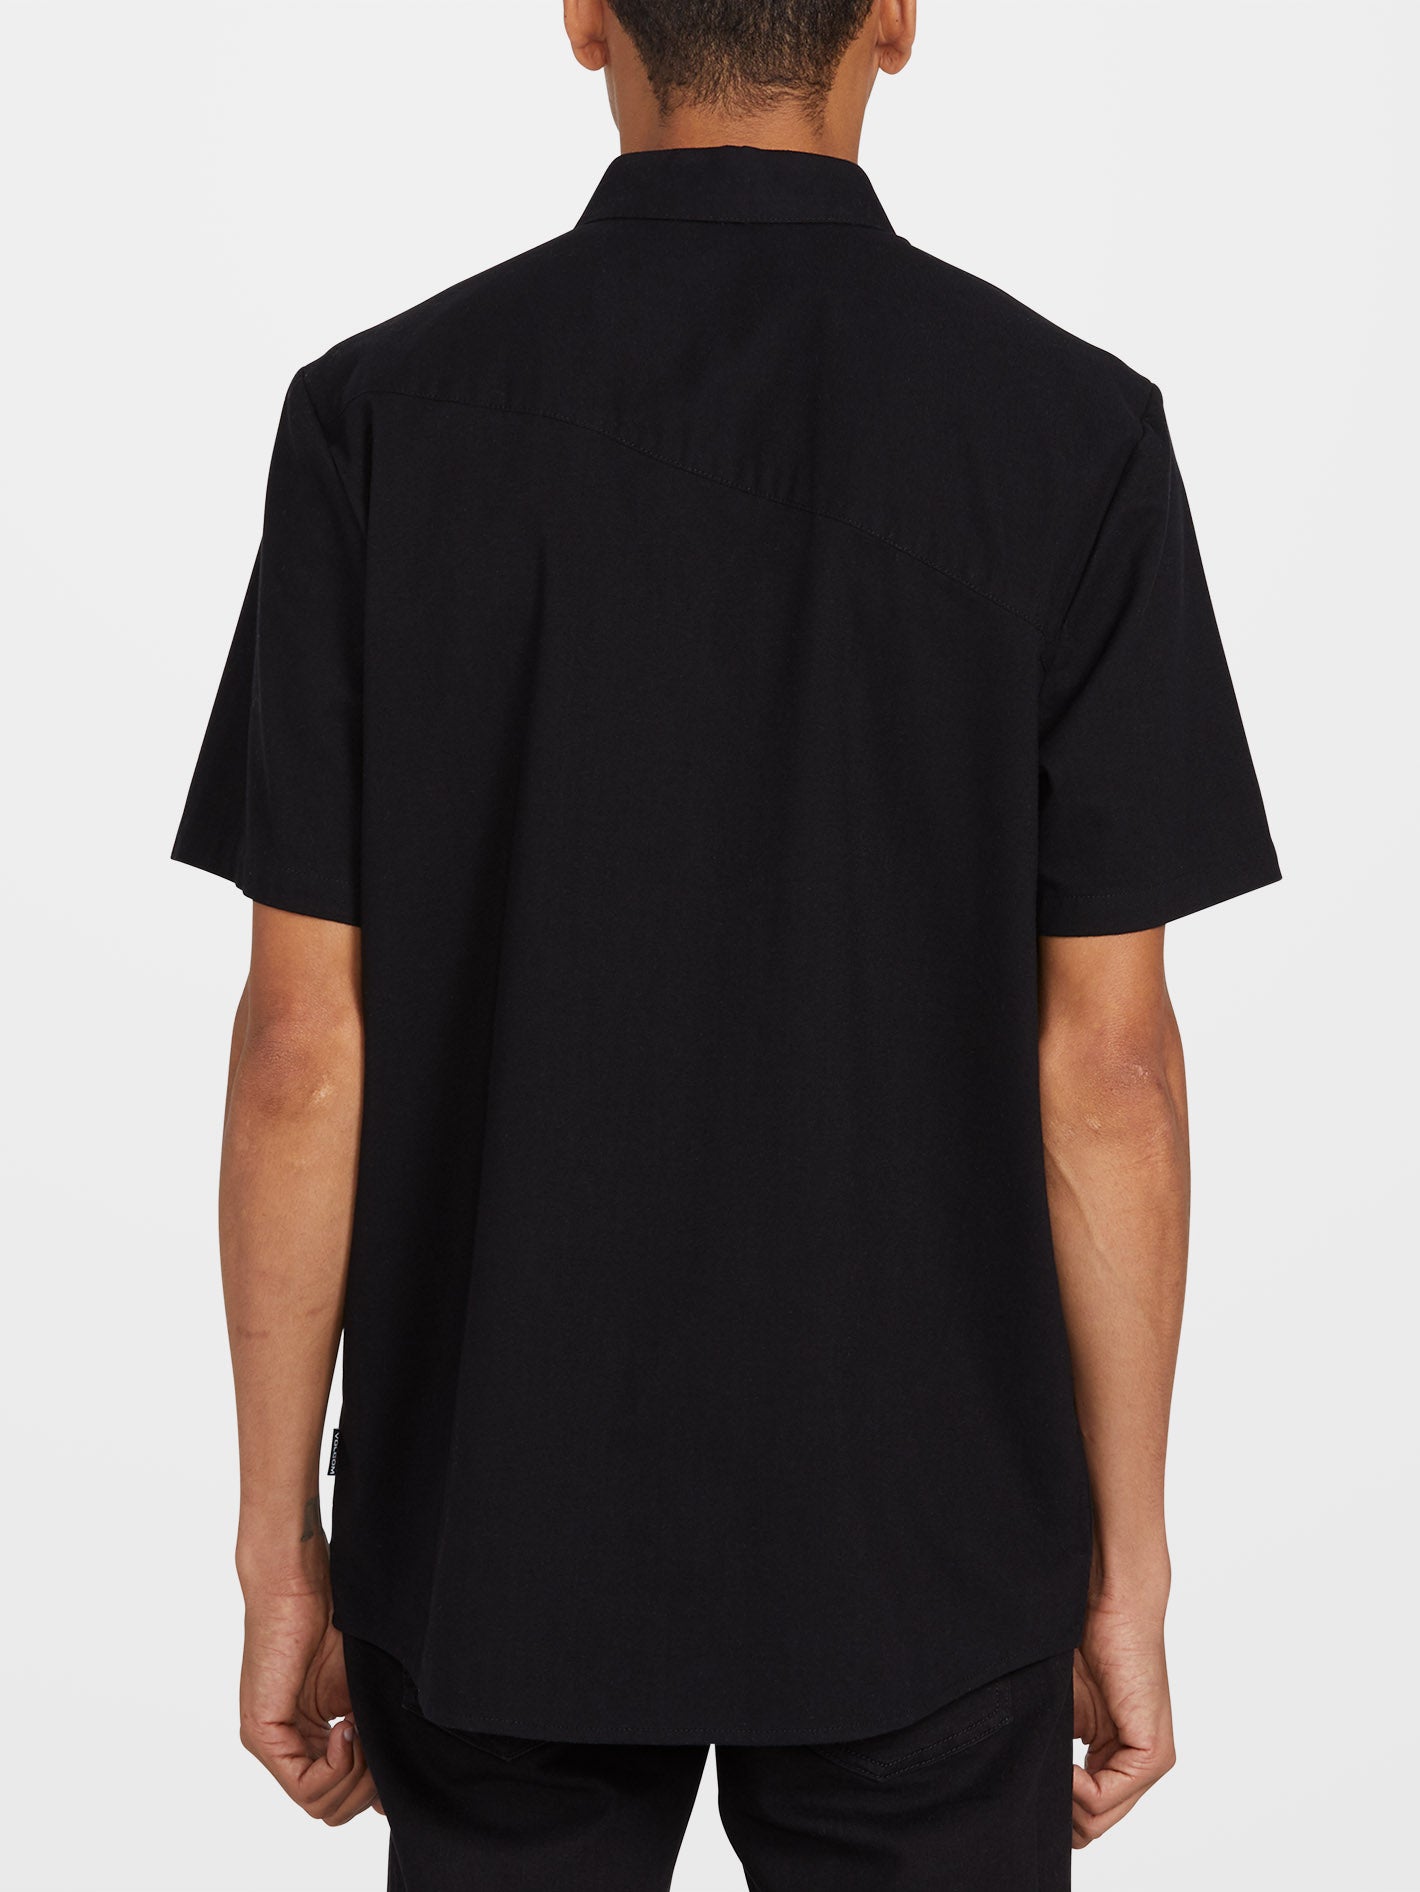 Everett Oxford Shirt - NEW BLACK - Men - Volcom EU – Volcom Europe